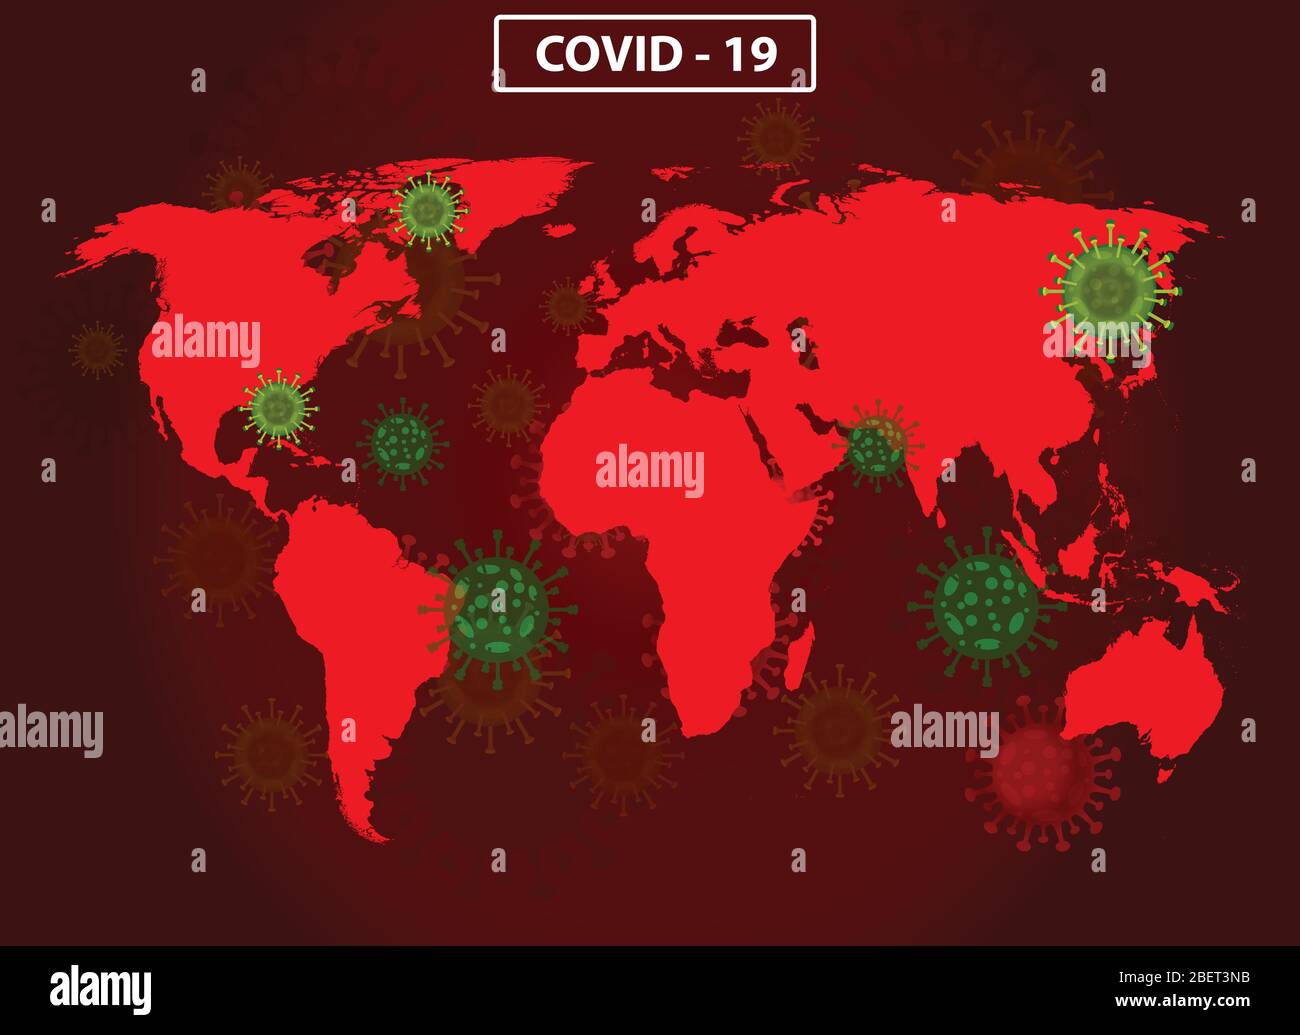 Weltkarte mit dem covid-19-Virenkonzept. Coronavirus ist auf der ganzen Erde verbreitet und in allen Ländern infiziert. Vektor-Illustration der roten Karte desig Stock Vektor